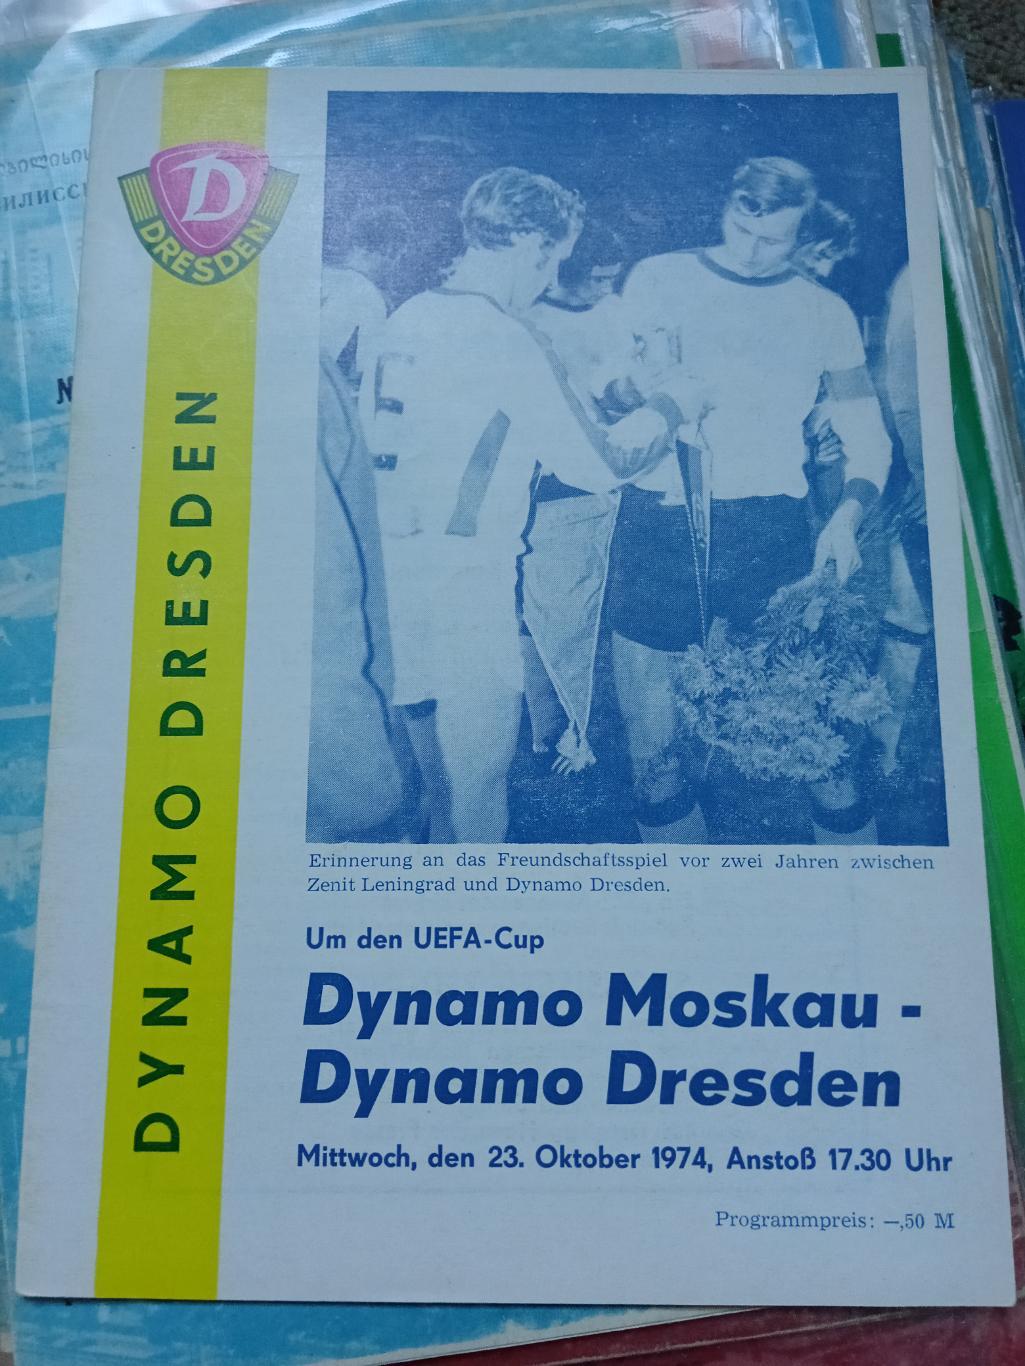 Динамо Дрезден - Динамо Москва 1974 в идеале!